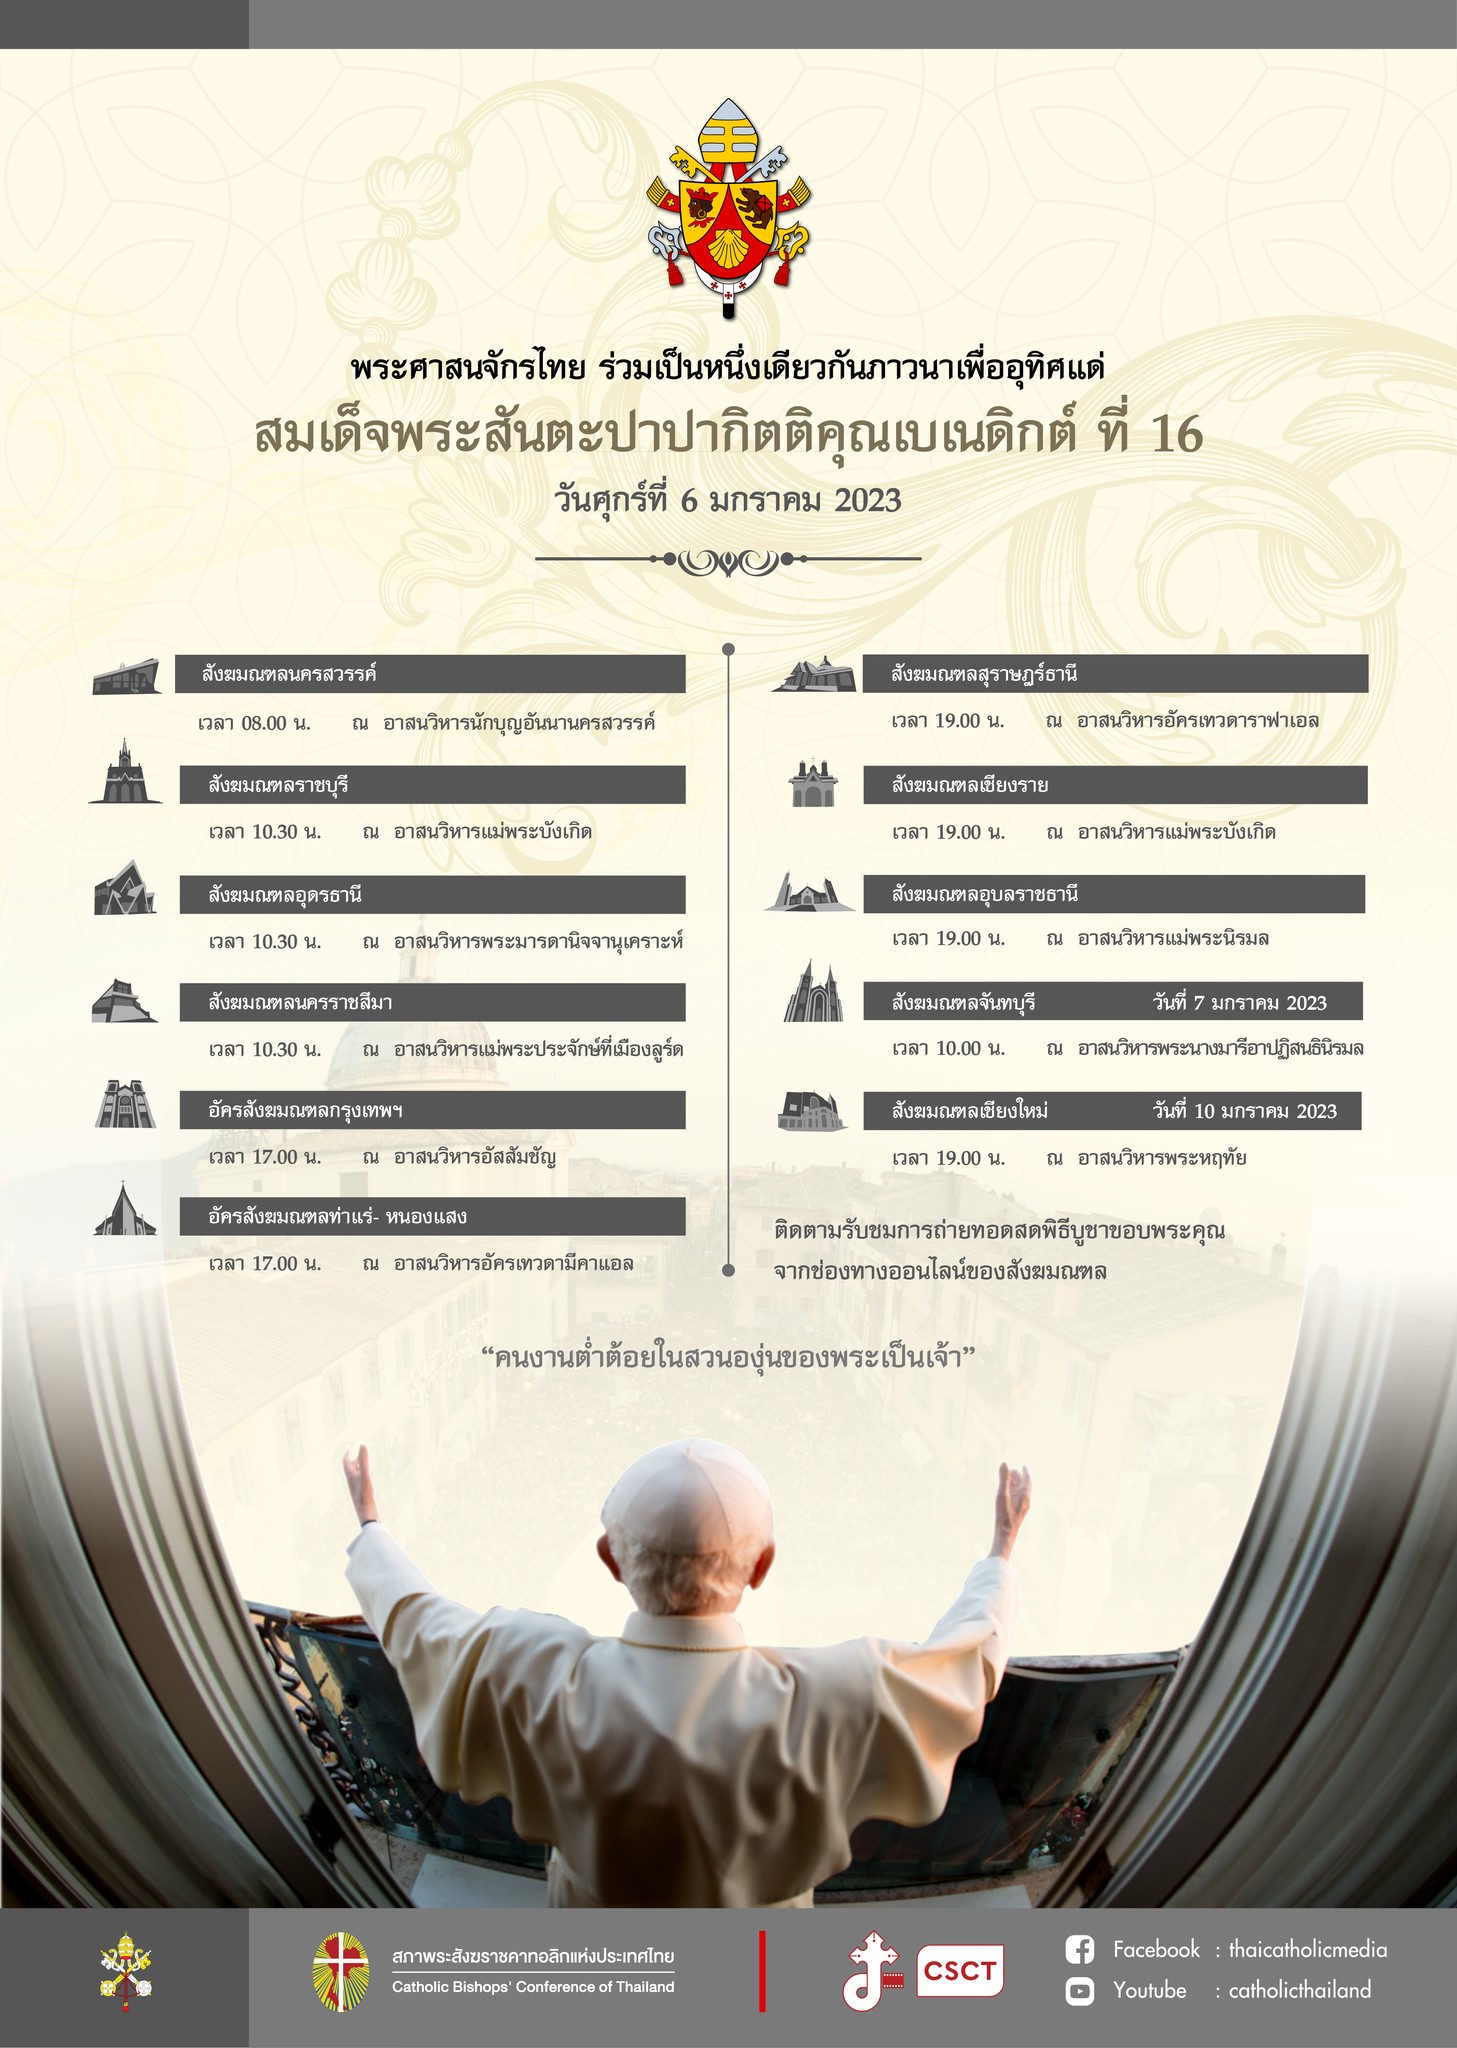 พระศาสนจักรไทย ร่วมเป็นหนึ่งเดียวกันภาวนาเพื่ออุทิศแด่ สมเด็จพระสันตะปาปากิตติคุณเบเนดิกต์ ที่ 16 วันศุกร์ที่ 6 มกราคม 2023